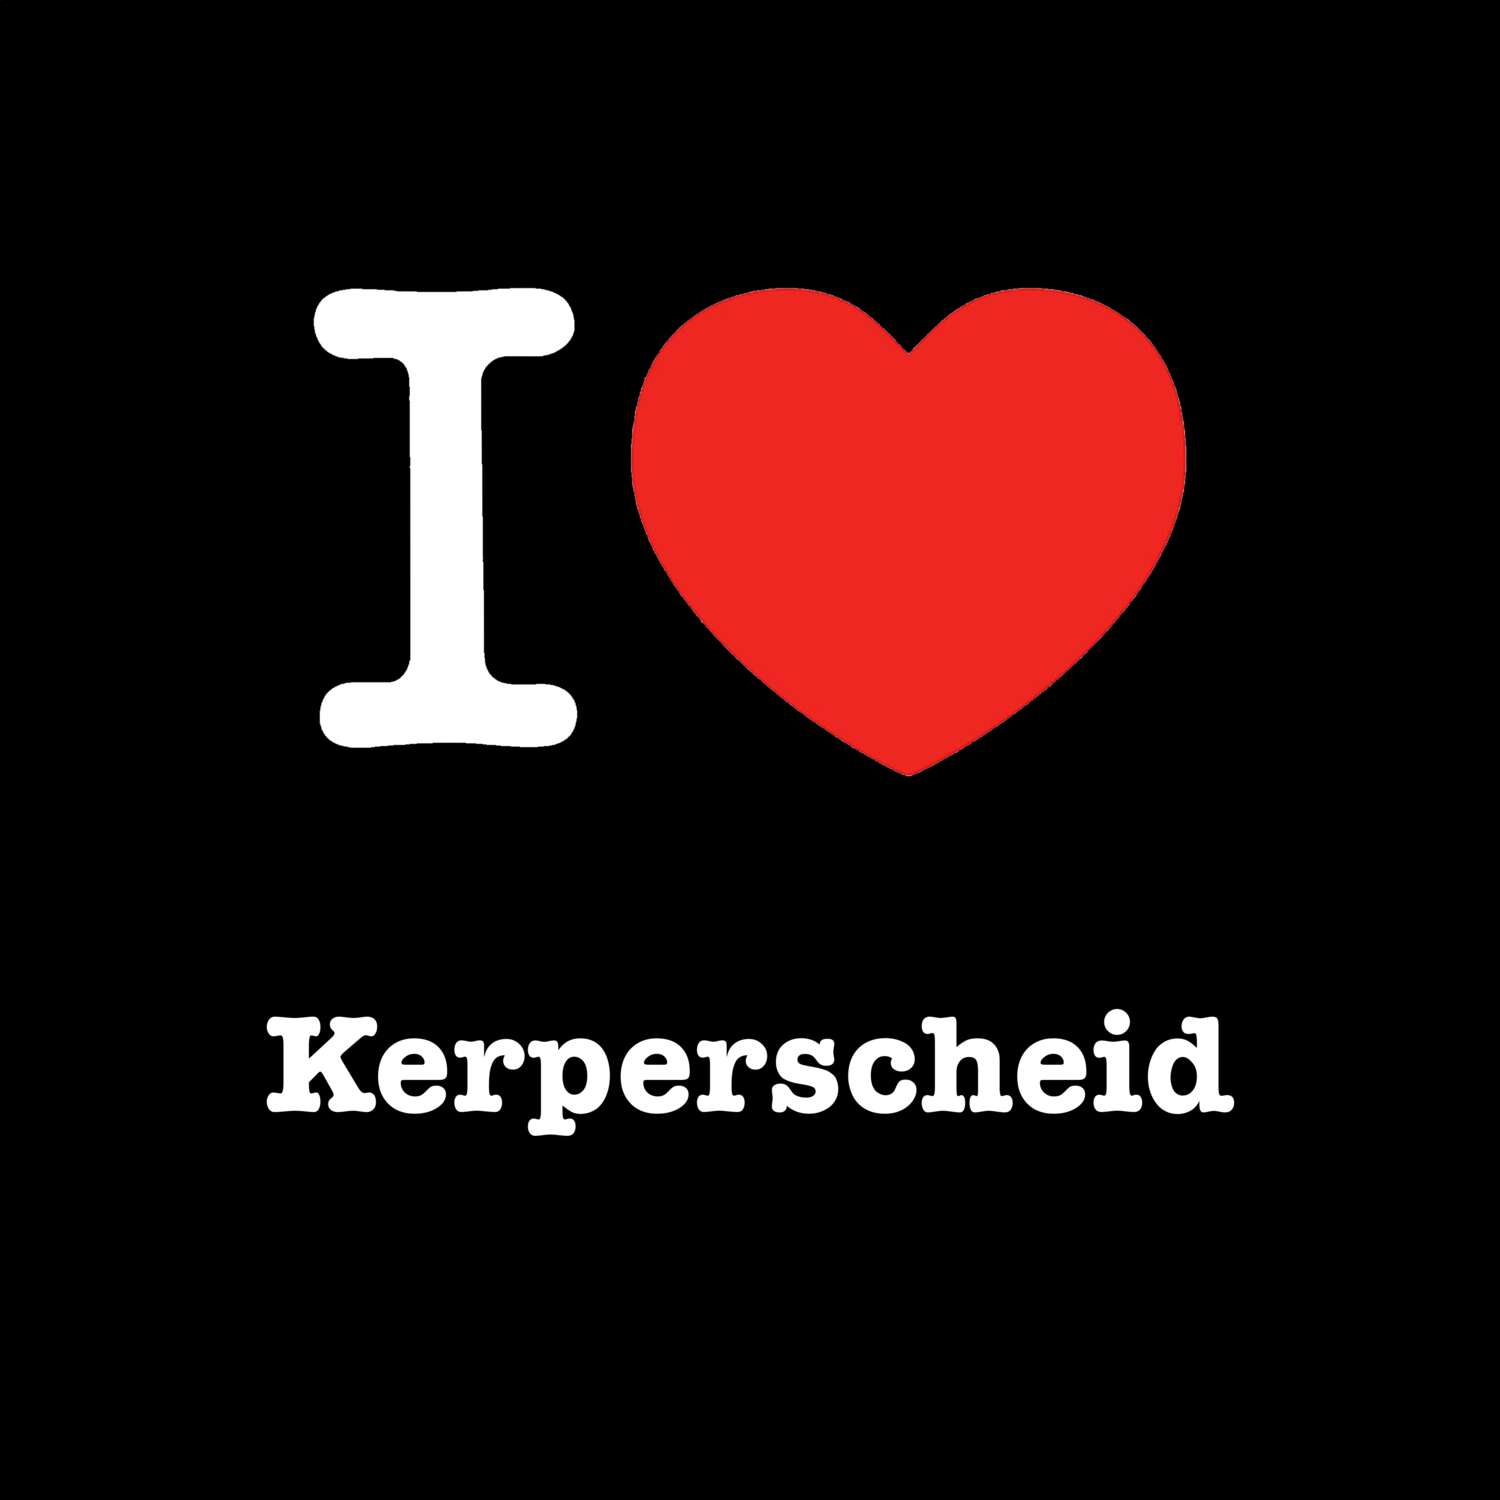 Kerperscheid T-Shirt »I love«